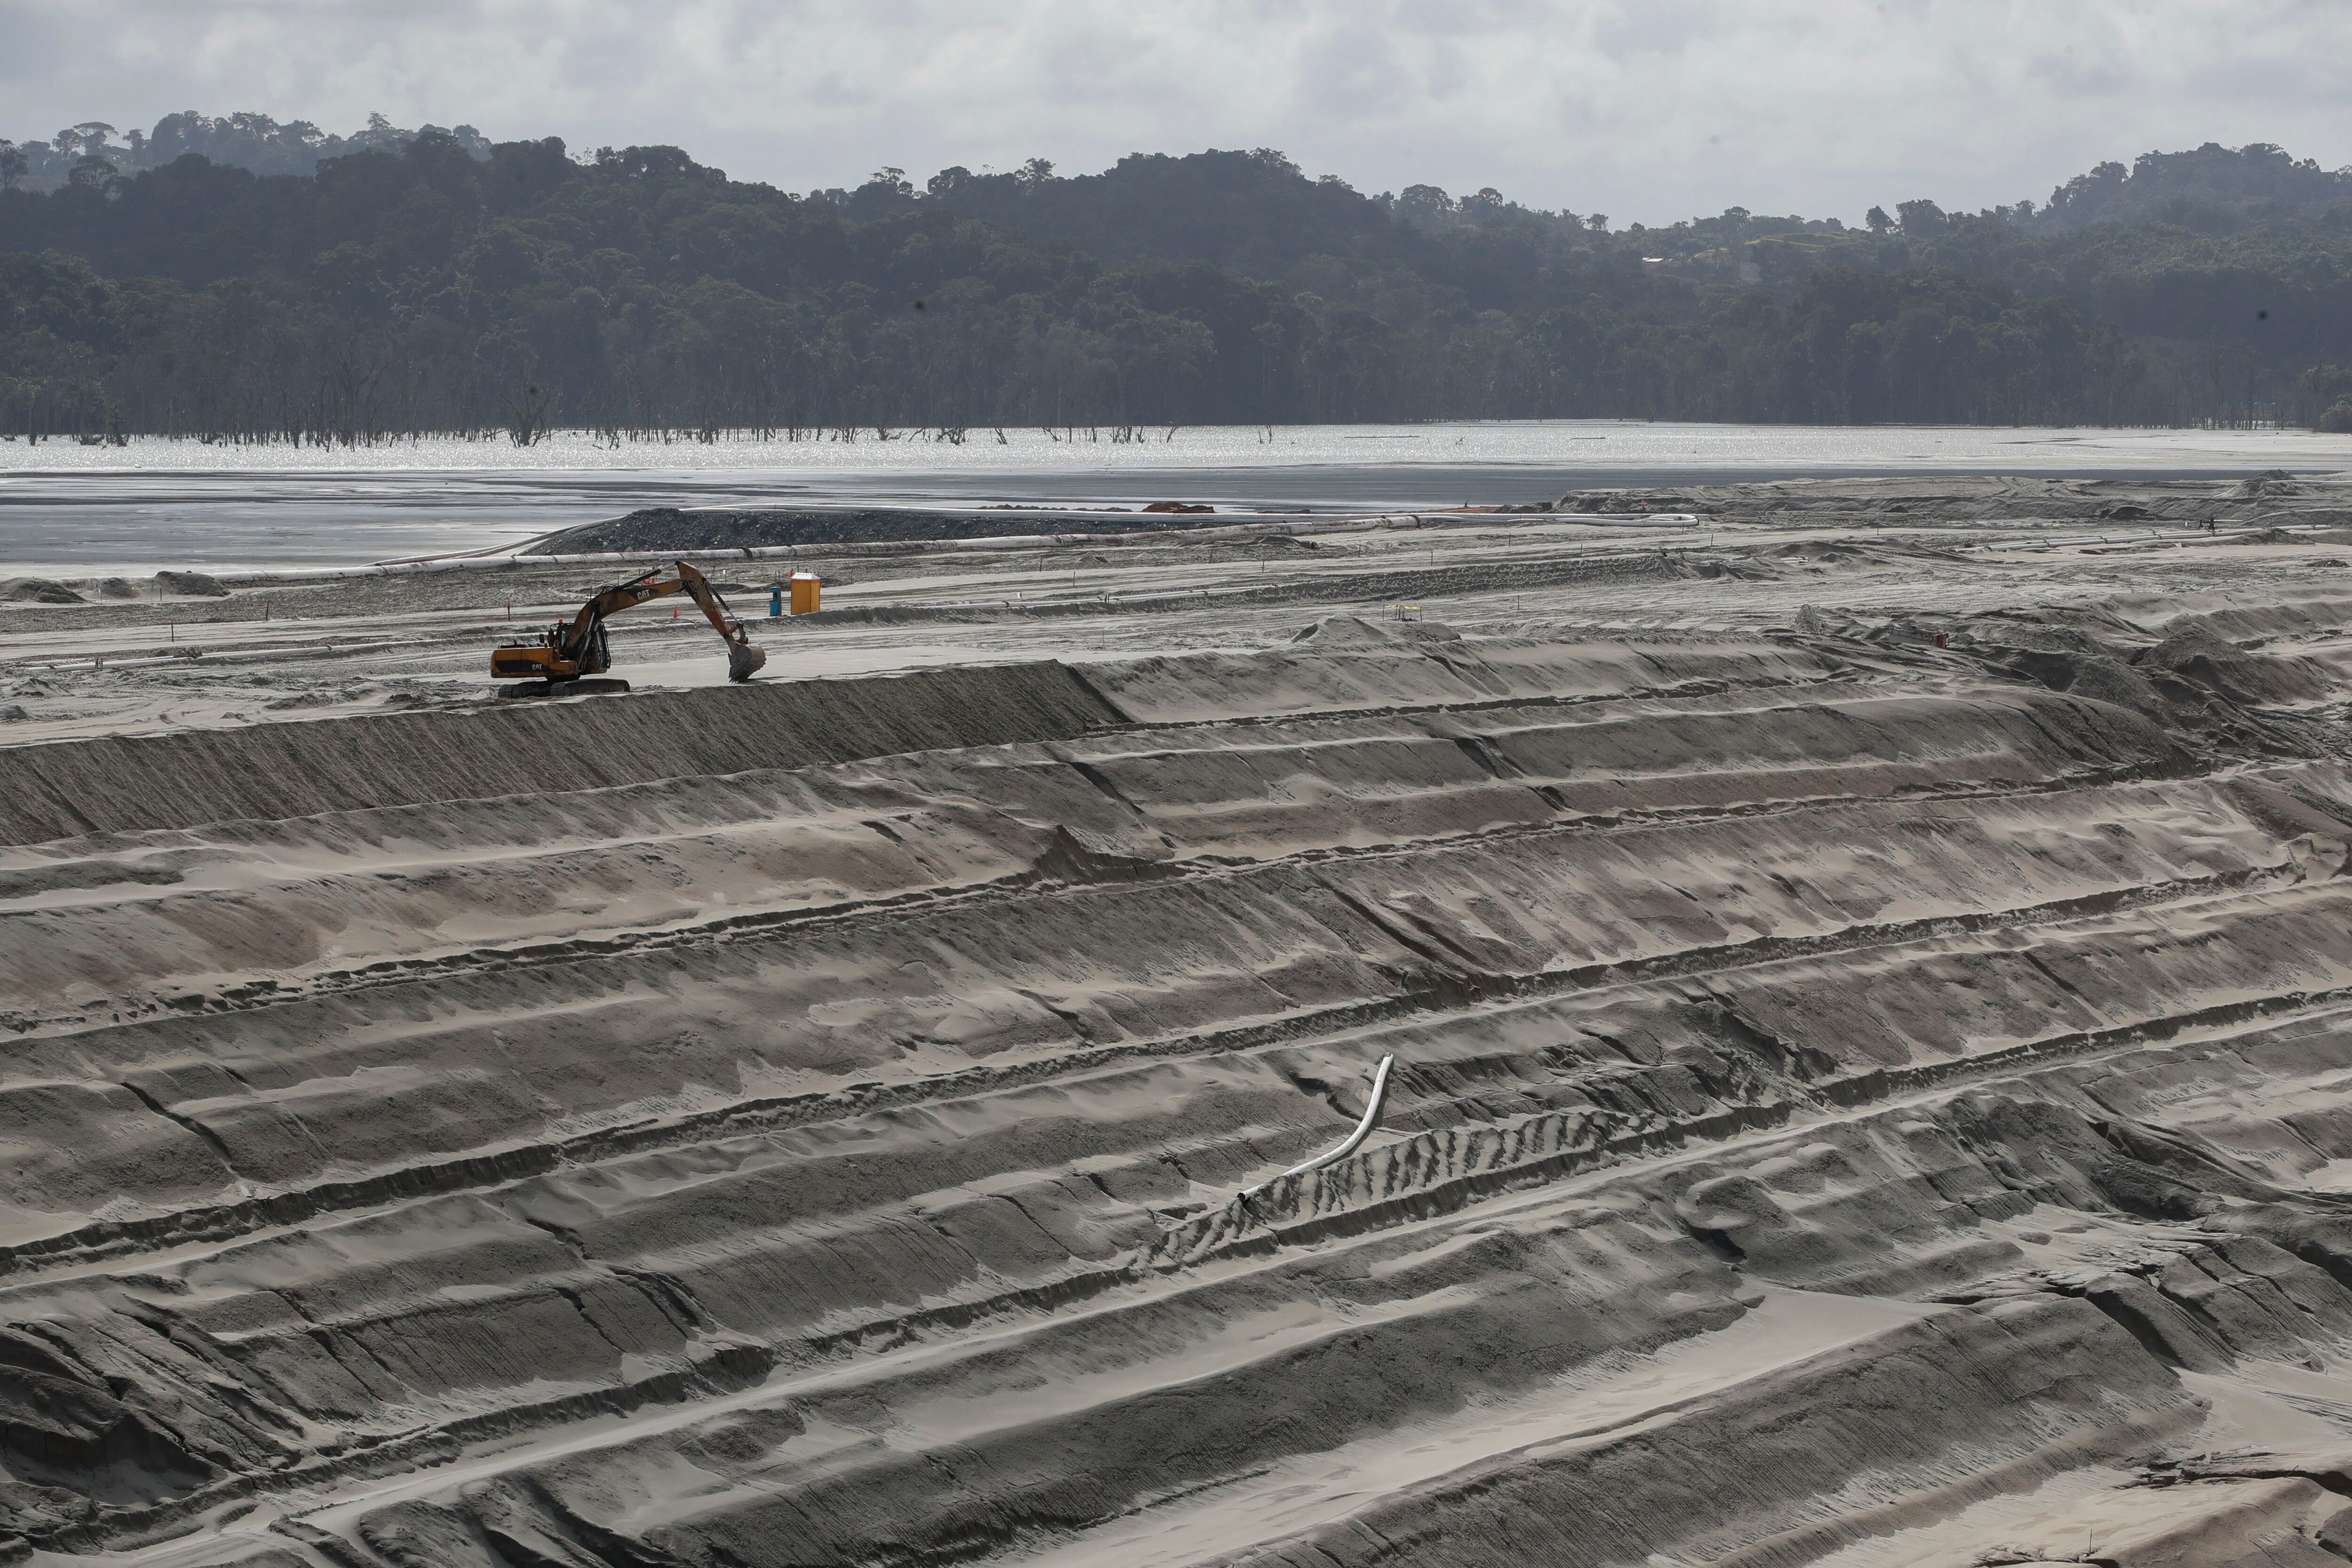 El cierre de la mina es percibido como negativo porque pone en entredicho la seguridad jurídica en Panamá indican analistas. EFE/Bienvenido Velasco
